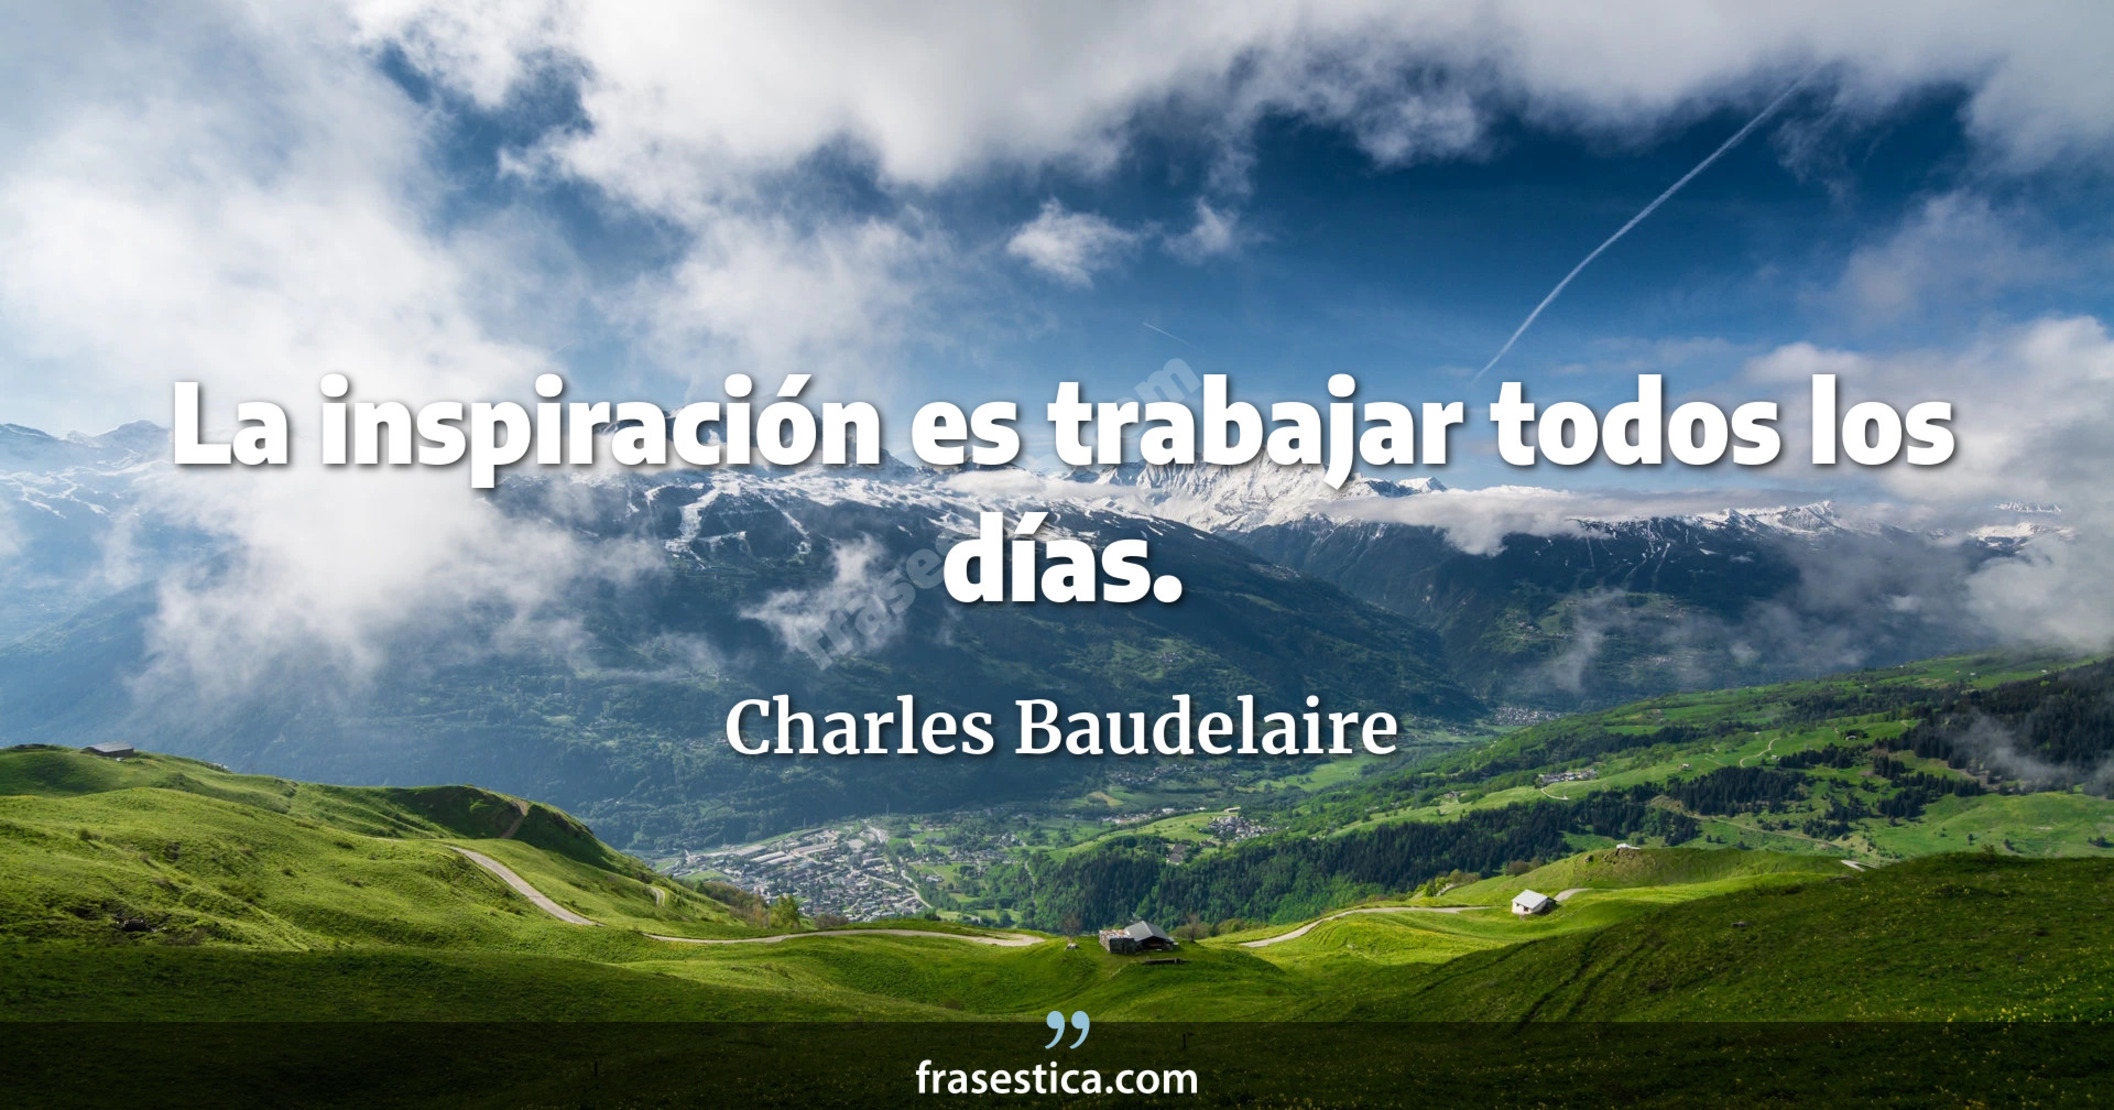 La inspiración es trabajar todos los días. - Charles Baudelaire